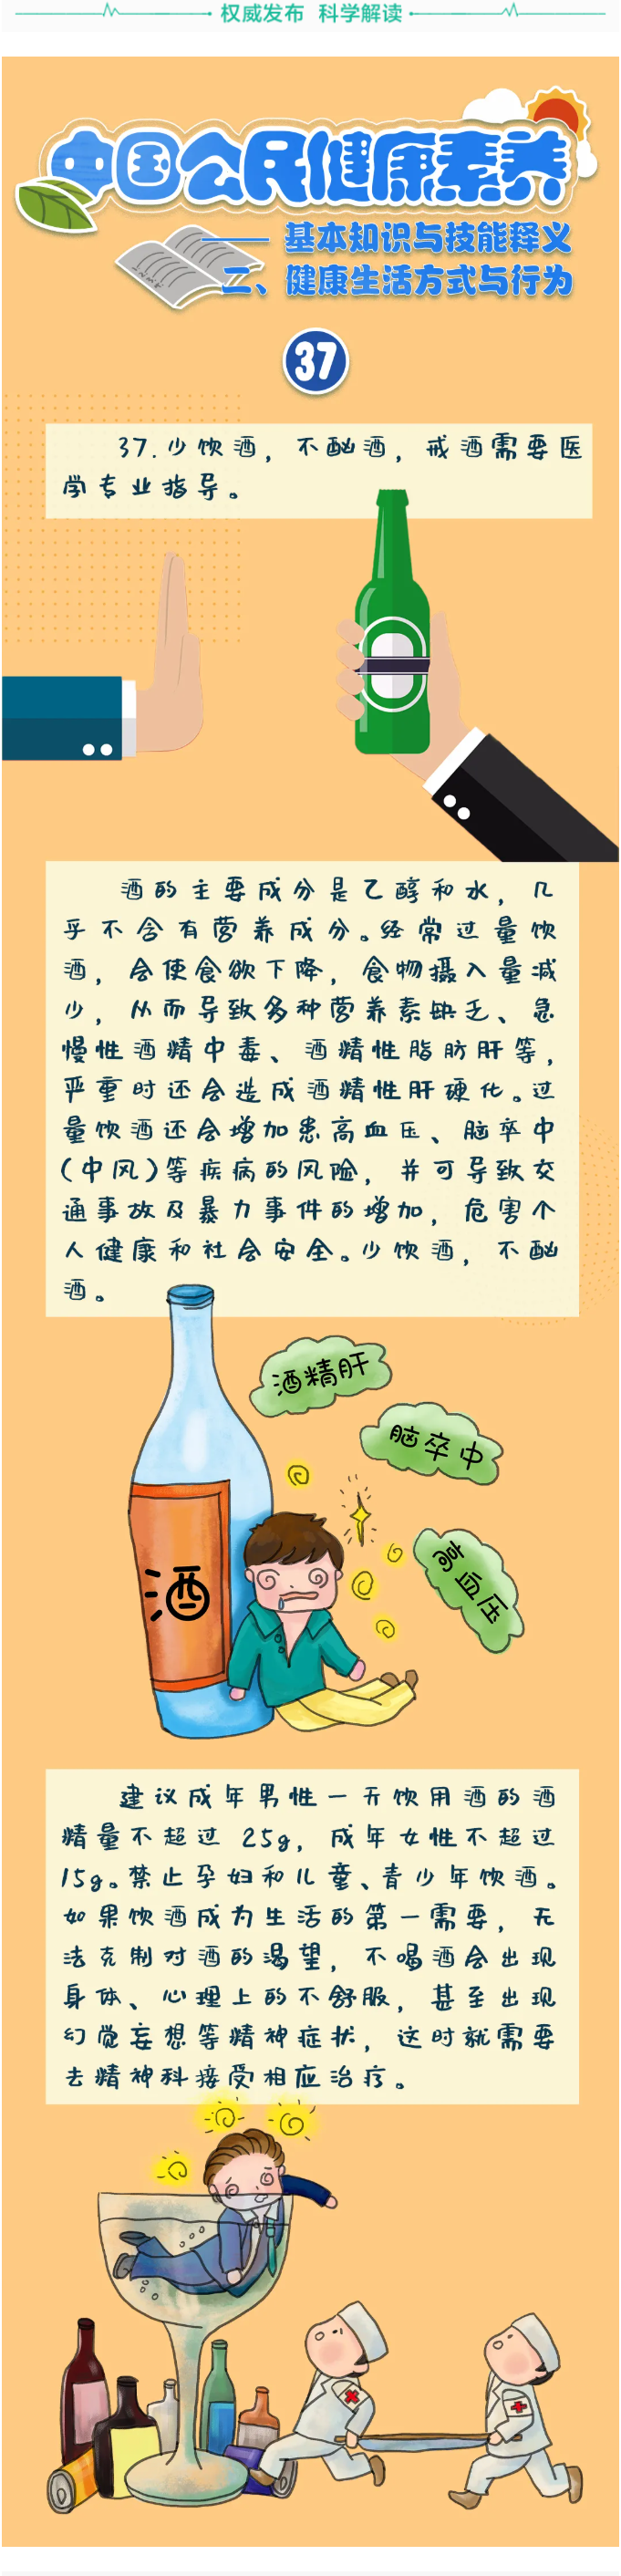 中国公民健康素养——基本知识与技能37少饮酒，不酗酒，戒酒需要医学专业指导